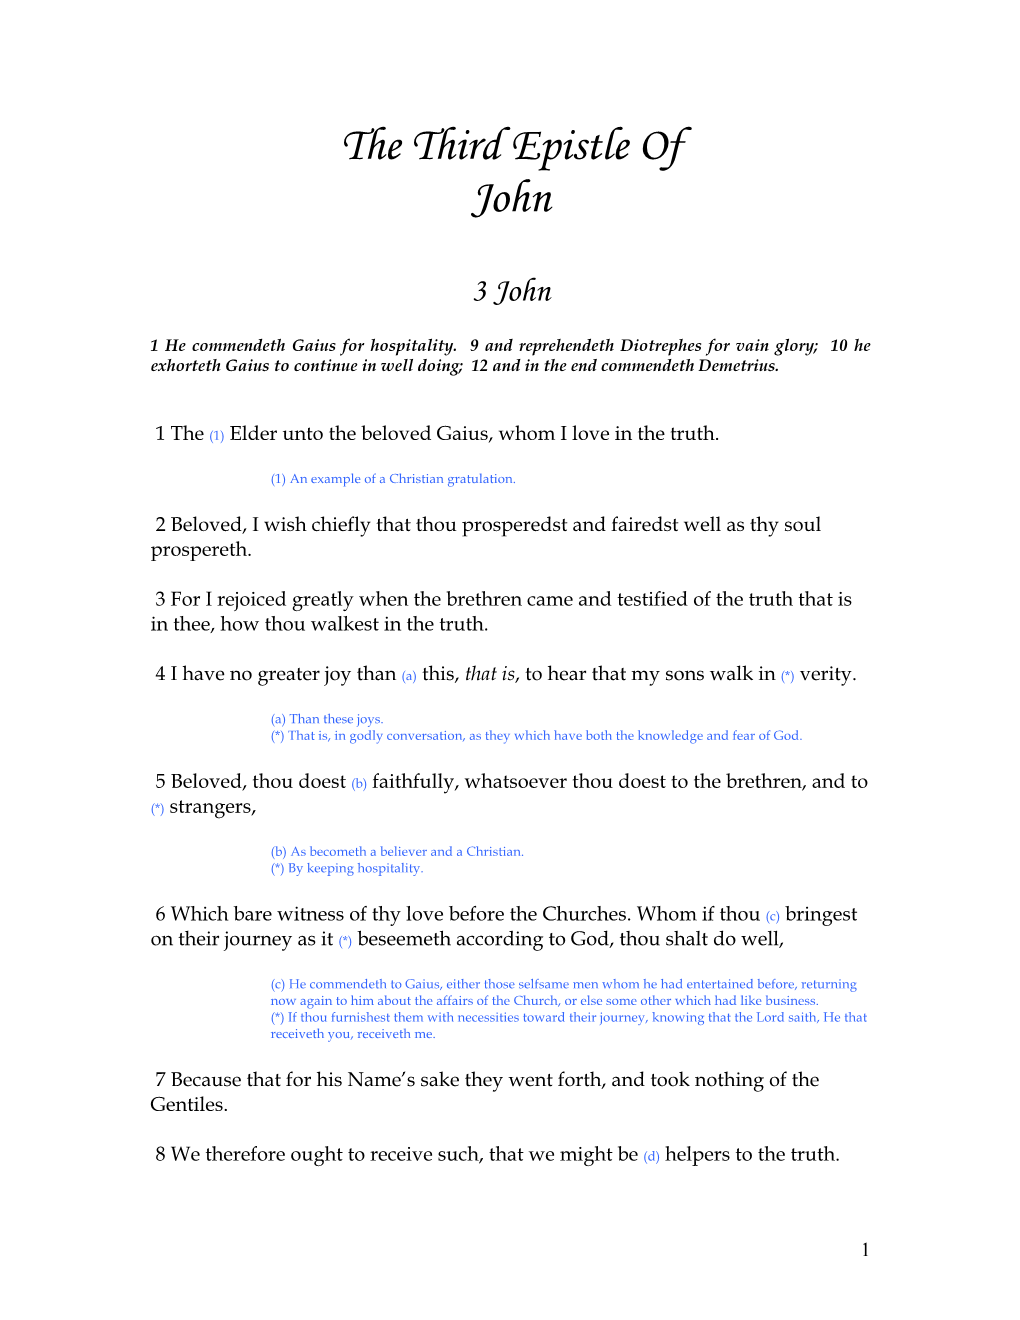 The Third Epistle of John